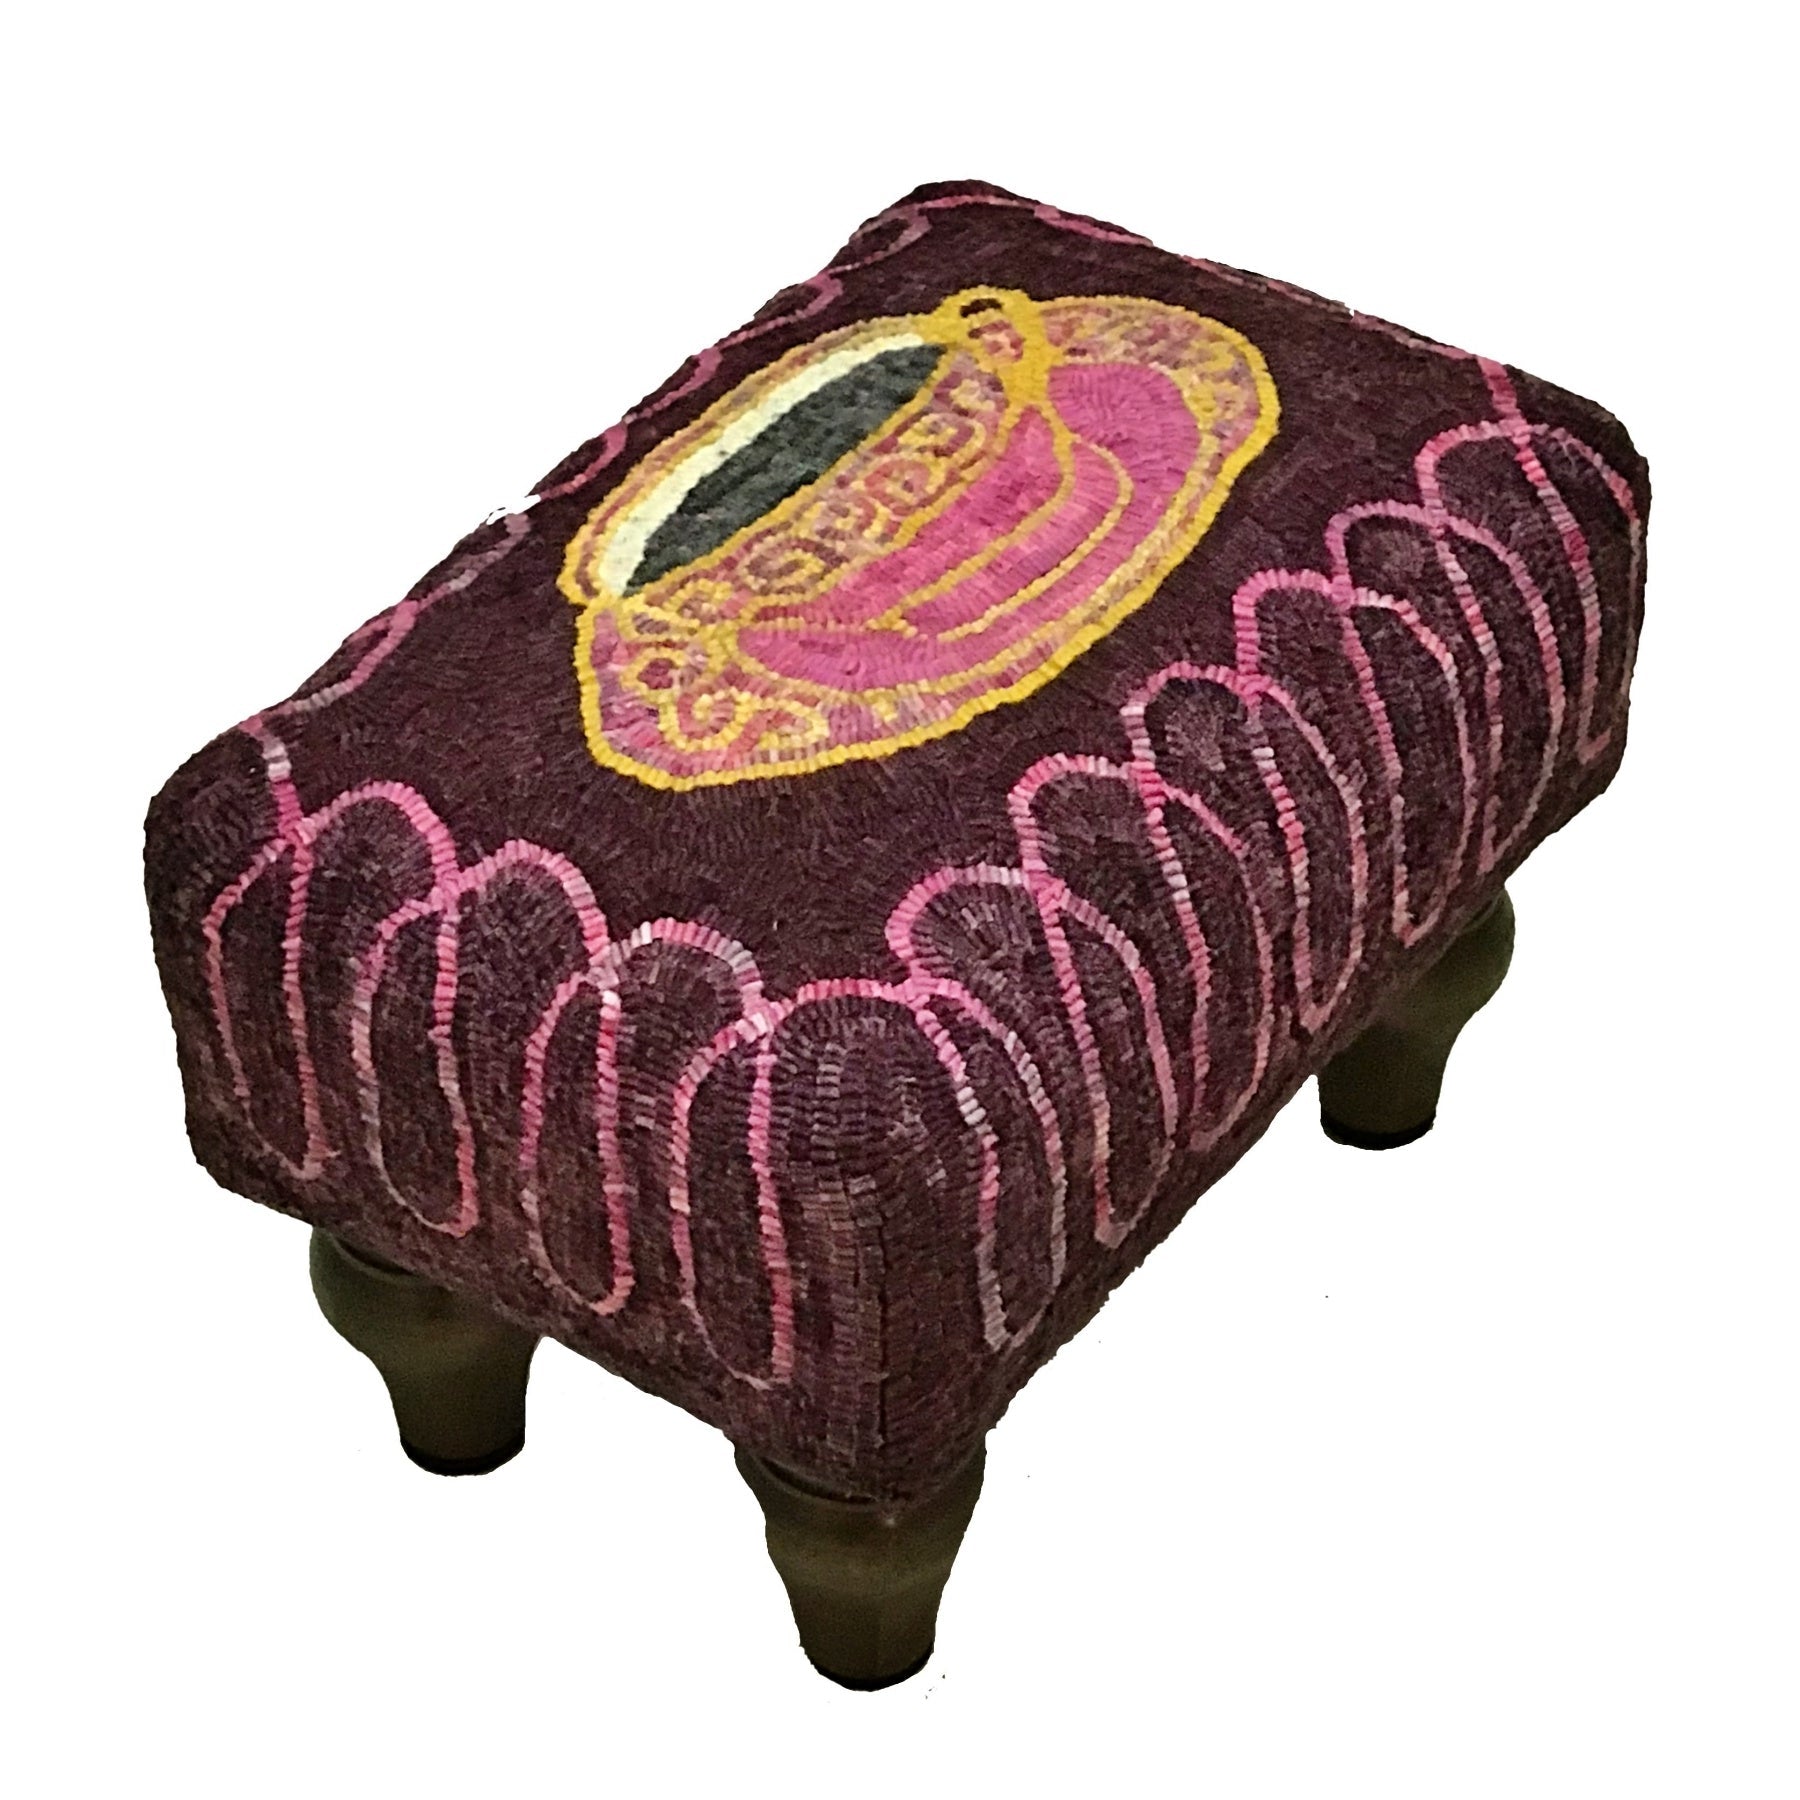 Teacup - Queen Anne Footstool Pattern, rug hooked by Debbie Douglas